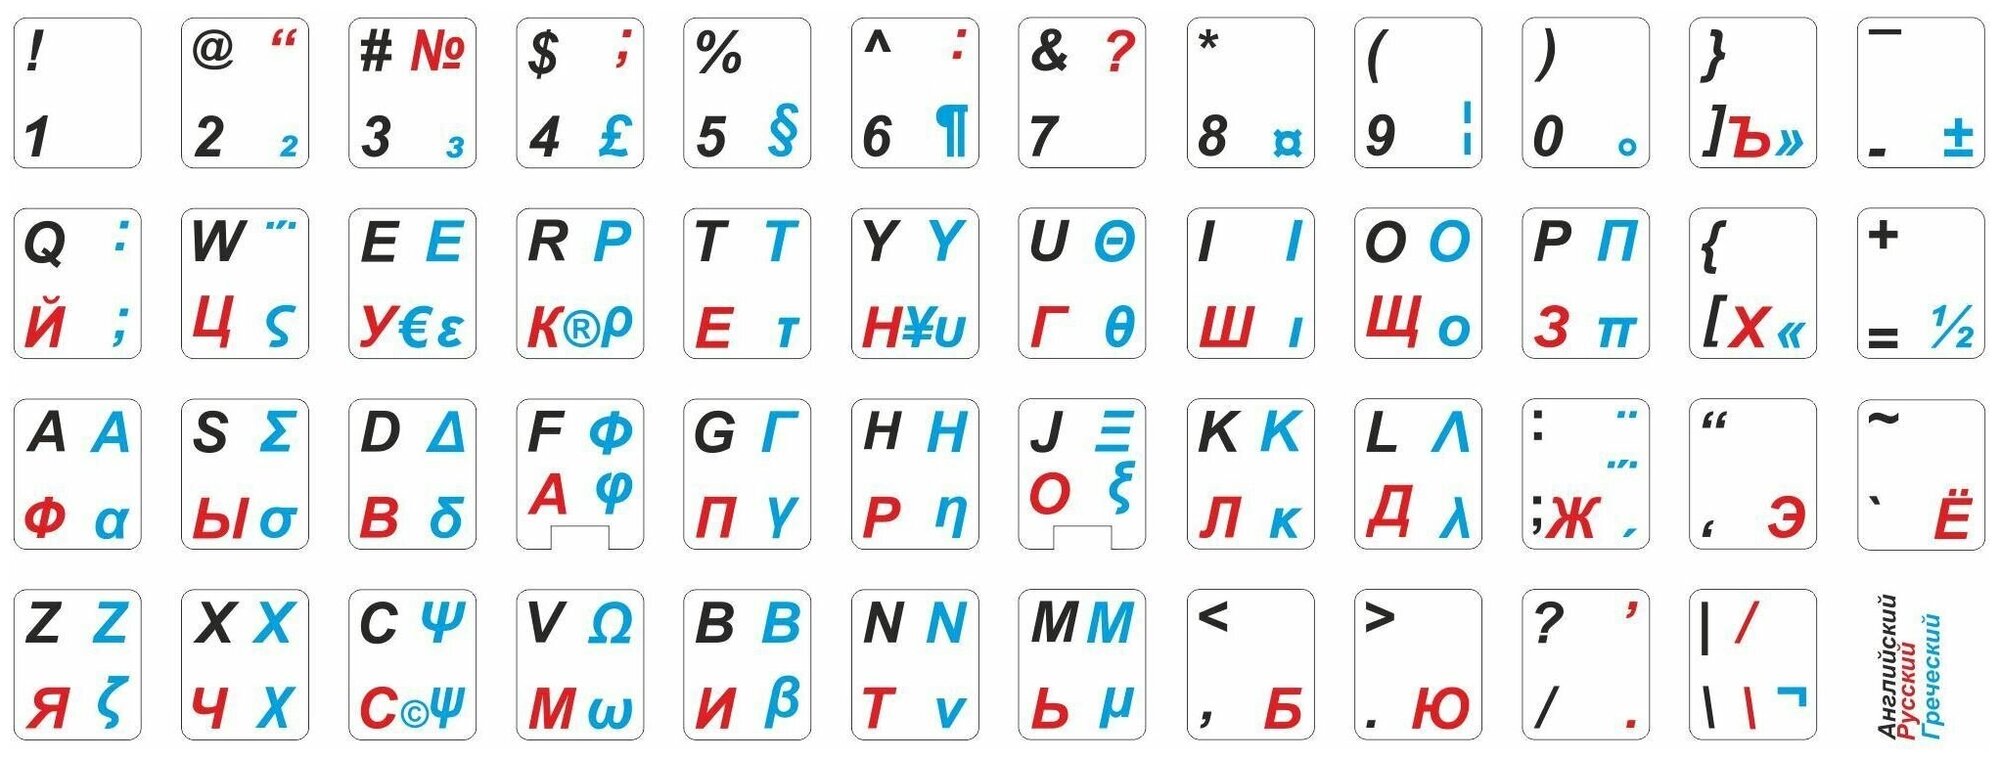 Греческие наклейки на клавиатуру с русскими и английскими буквами для ноутбука, настольного компьютера, клавиатуры 11x13 мм